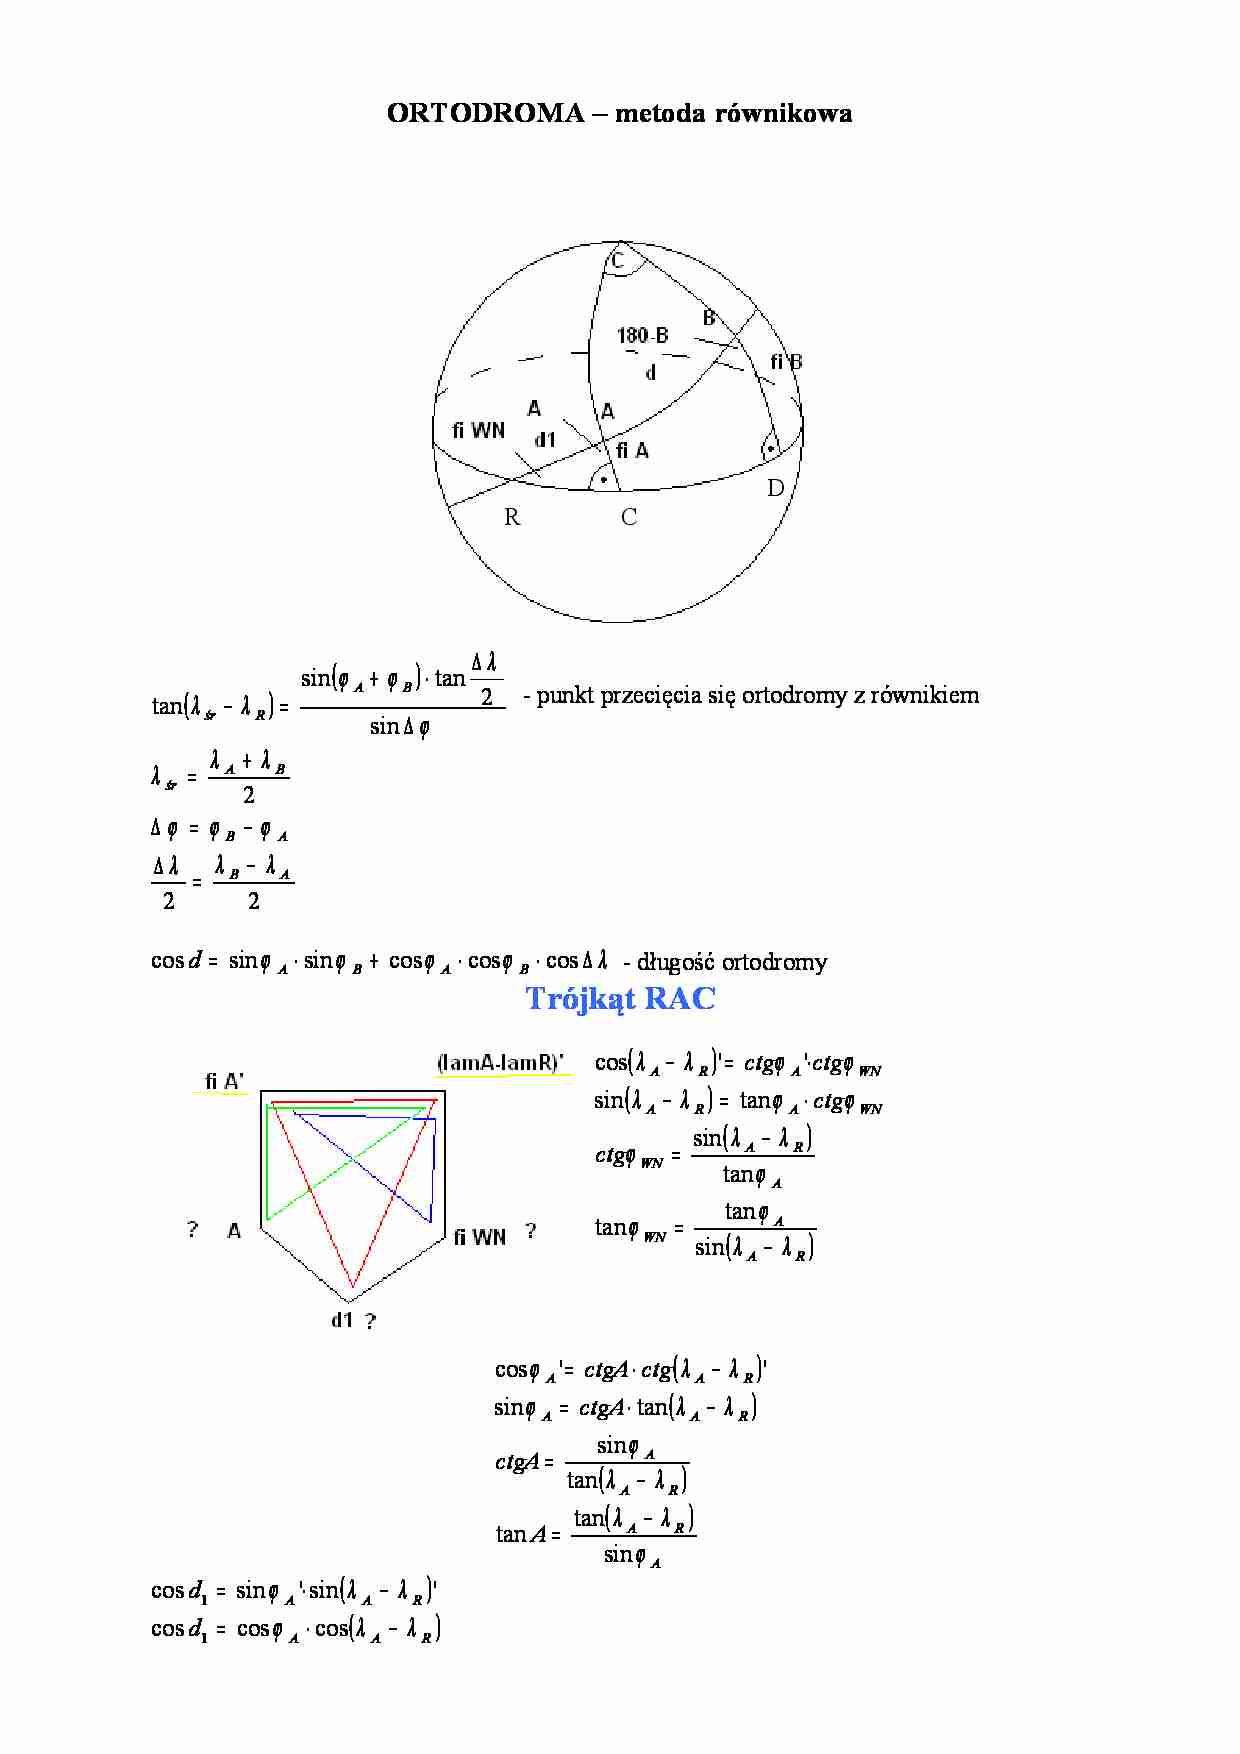 ORTODROMA - metoda równikowa - strona 1